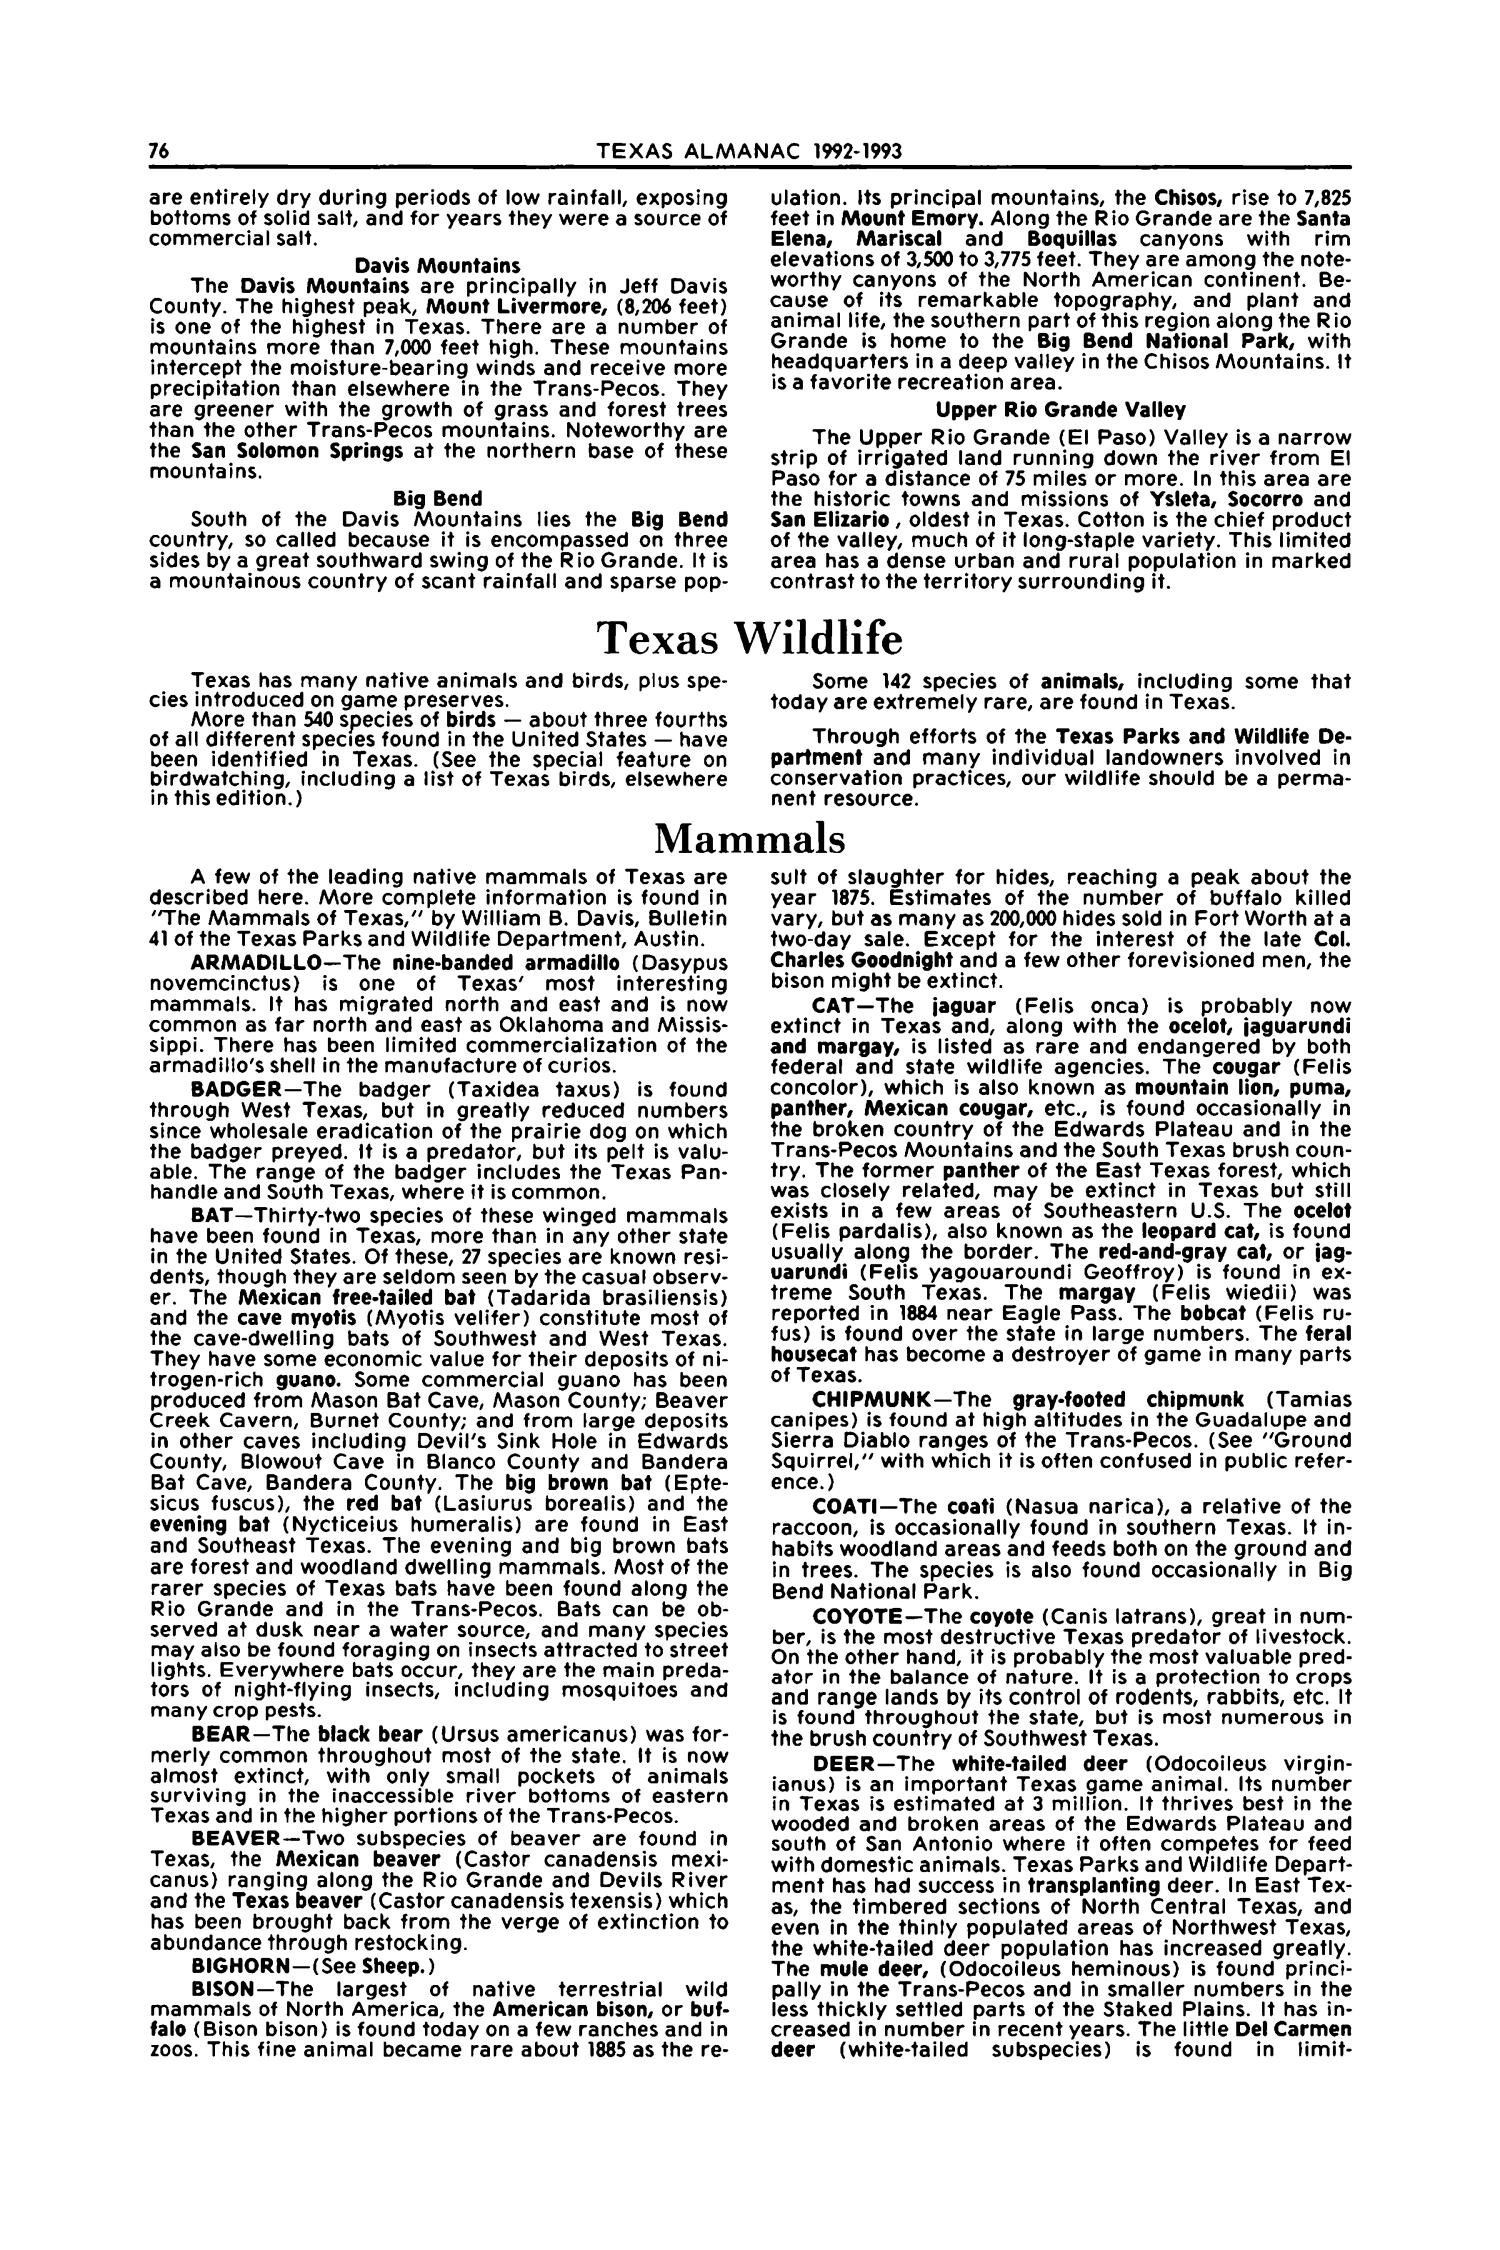 Texas Almanac, 1992-1993
                                                
                                                    76
                                                